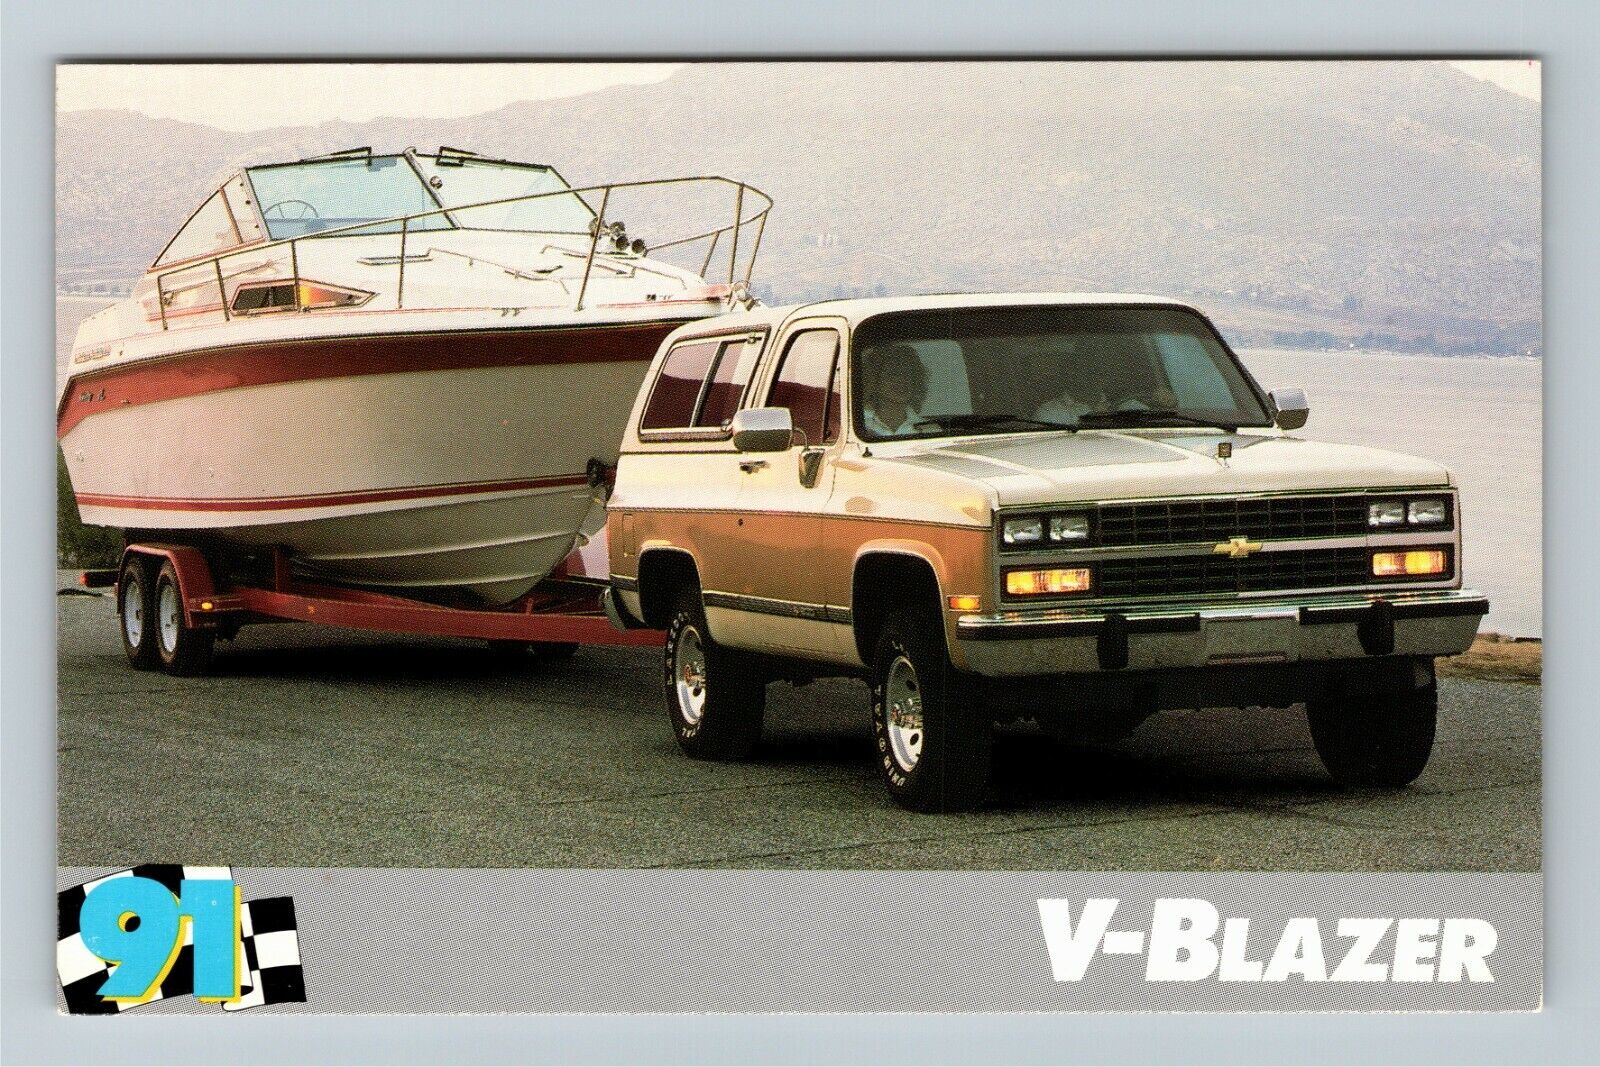 1991 Chevrolet V-Blazer, Automobile, Vintage Postcard